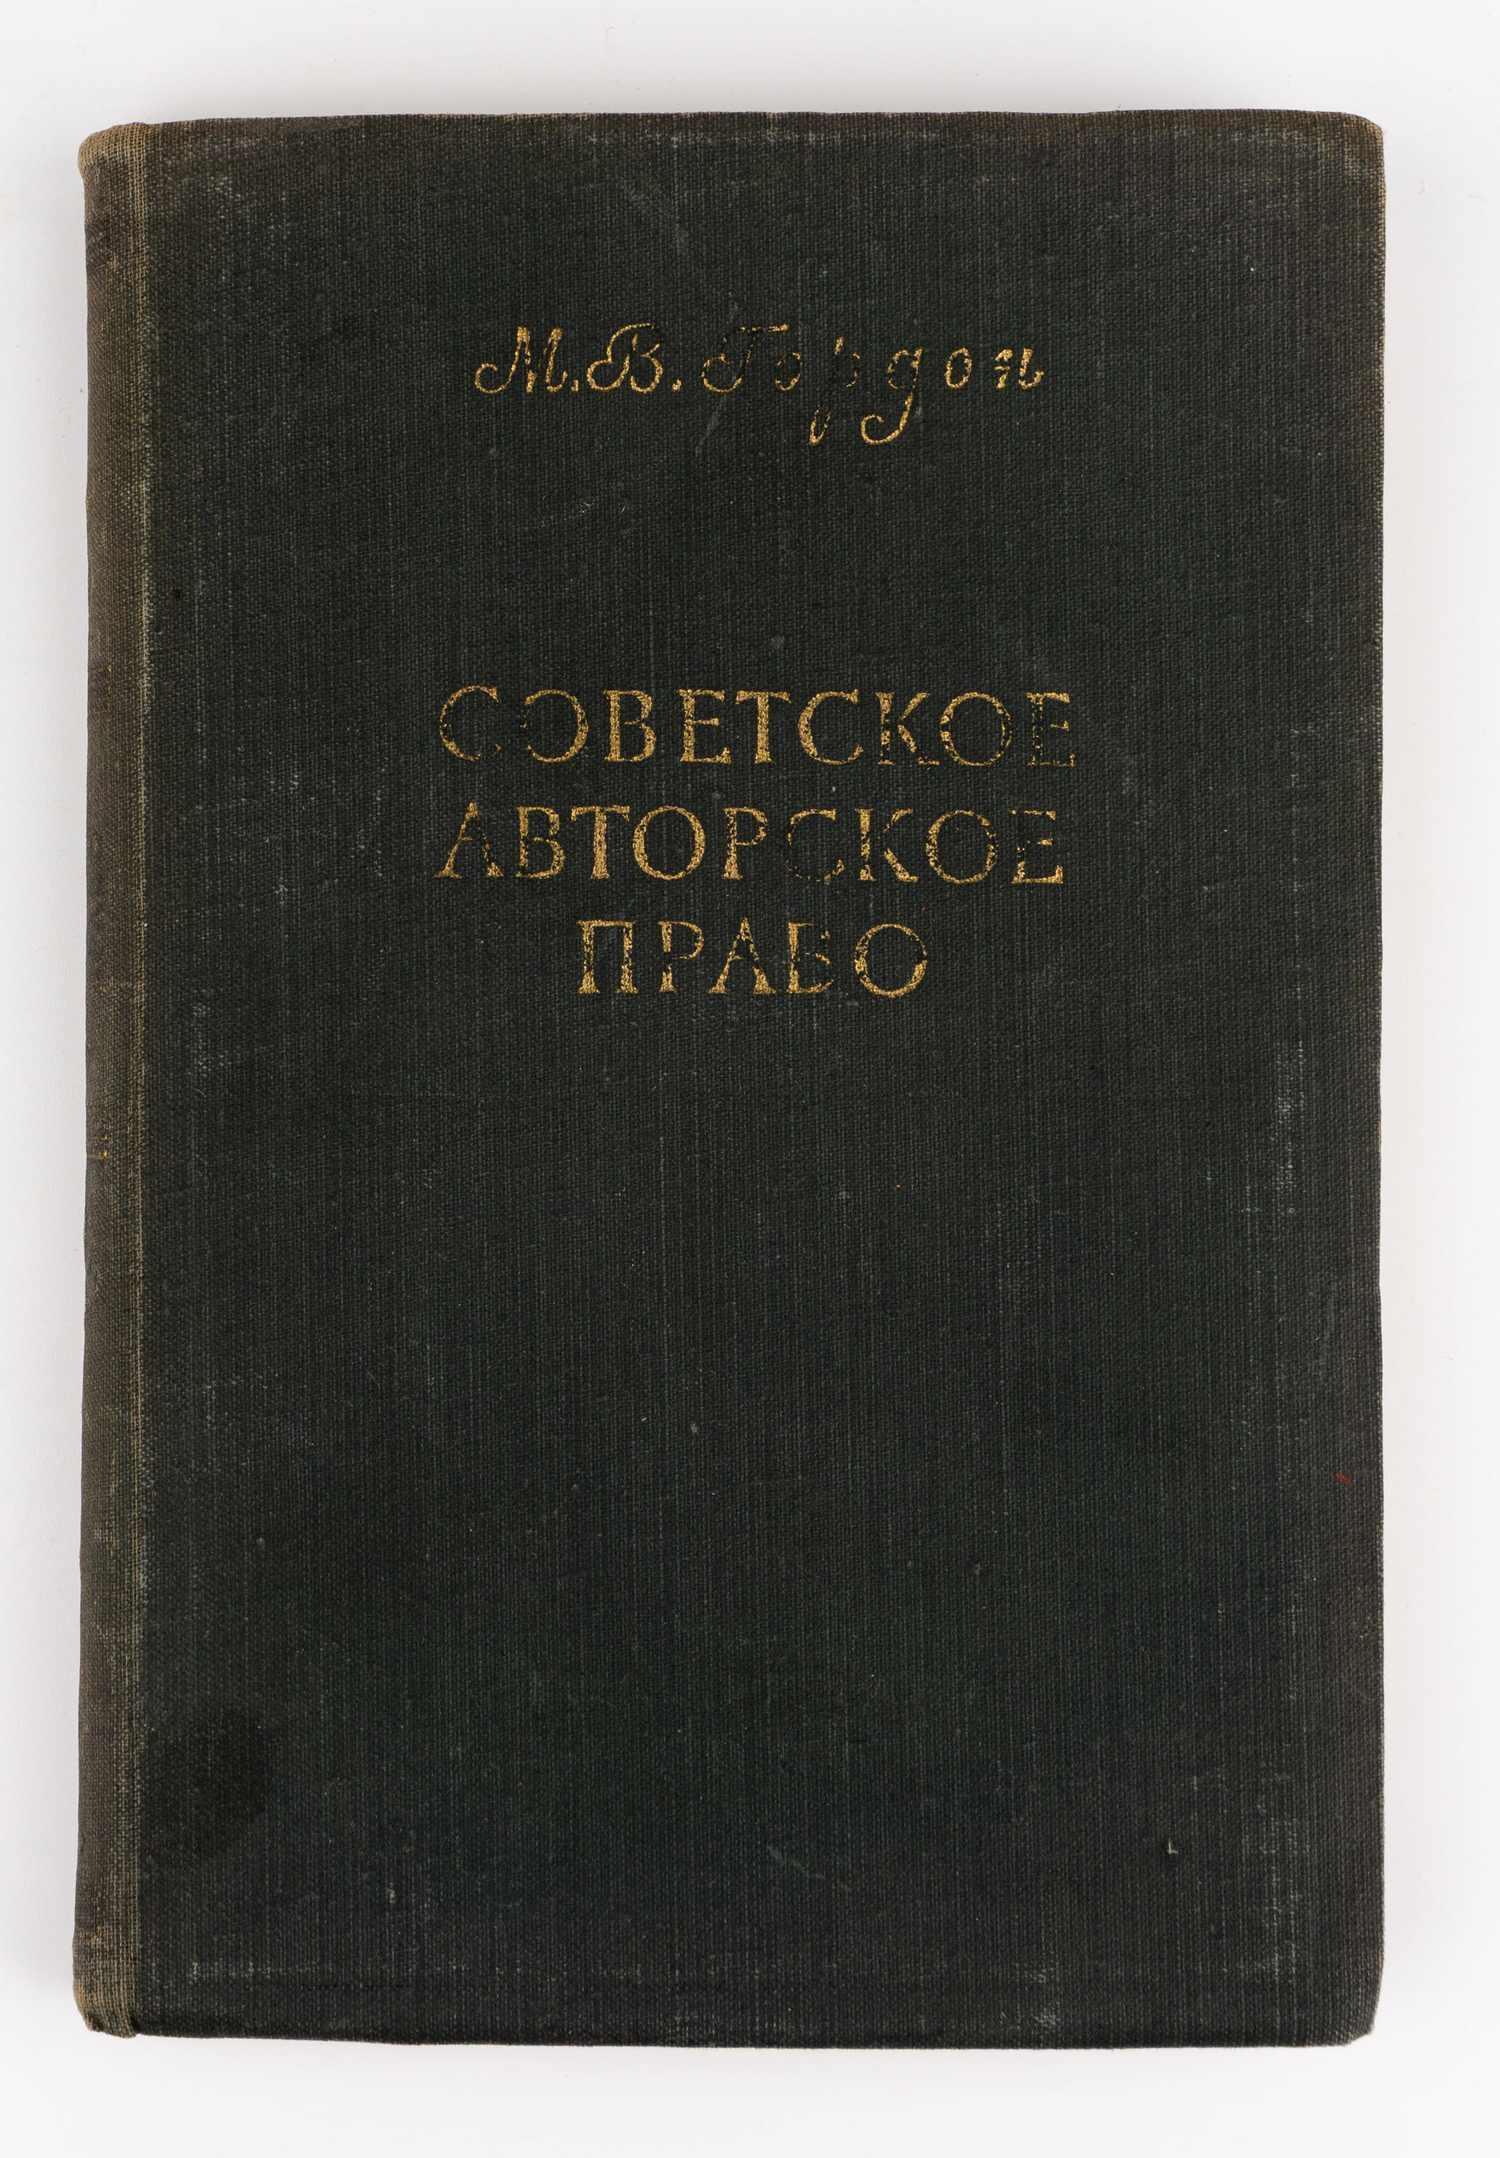 Гордон М.В., автограф. Советское авторское право.